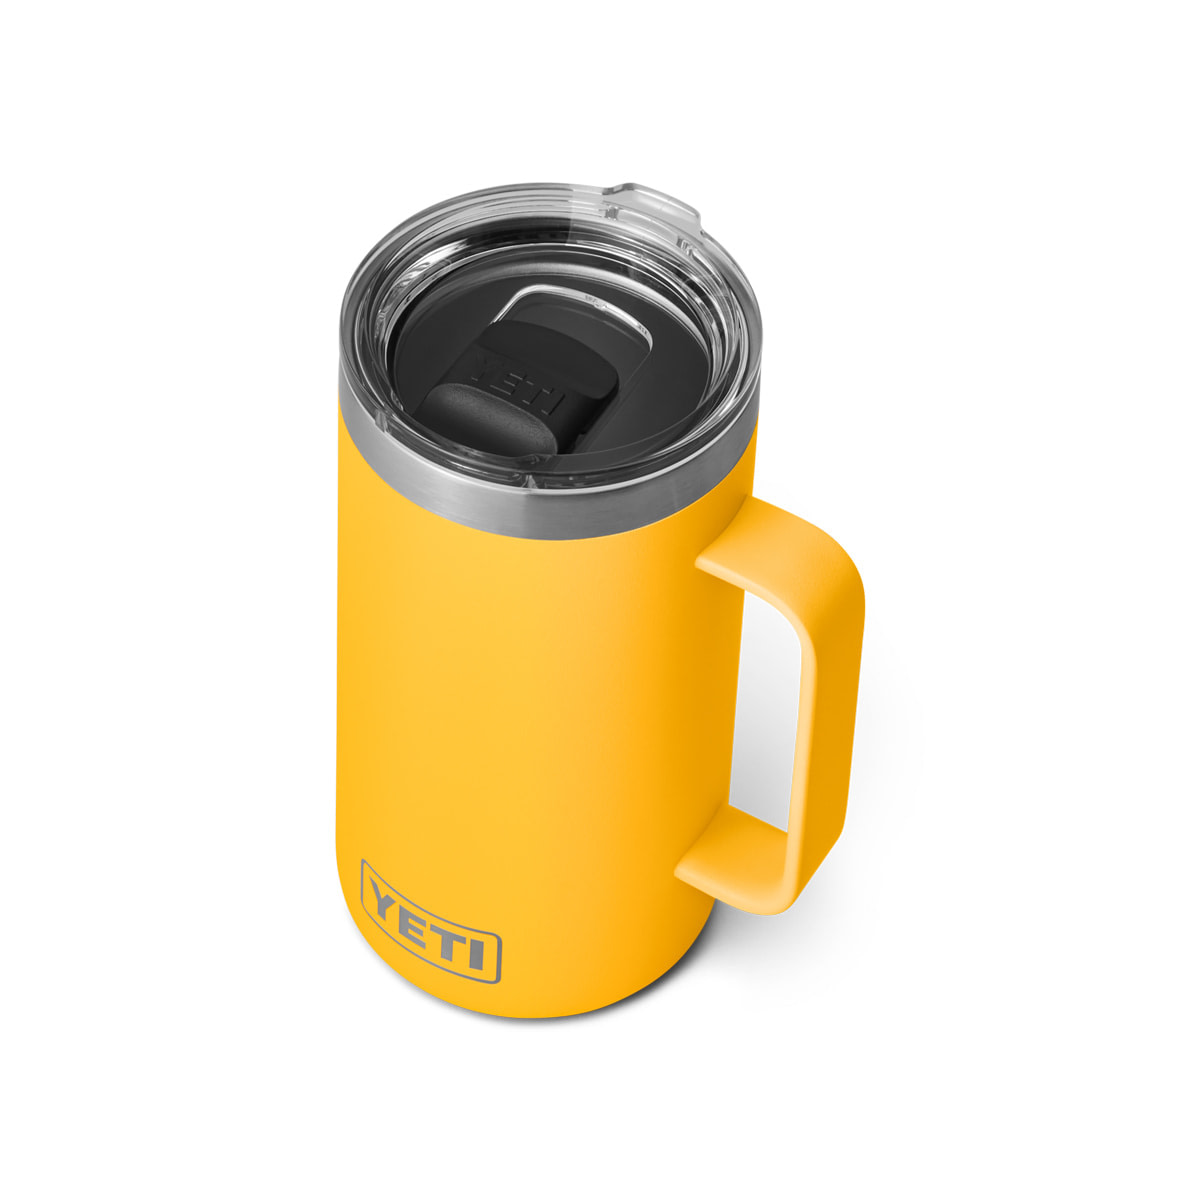 Stainless-steel beer mug